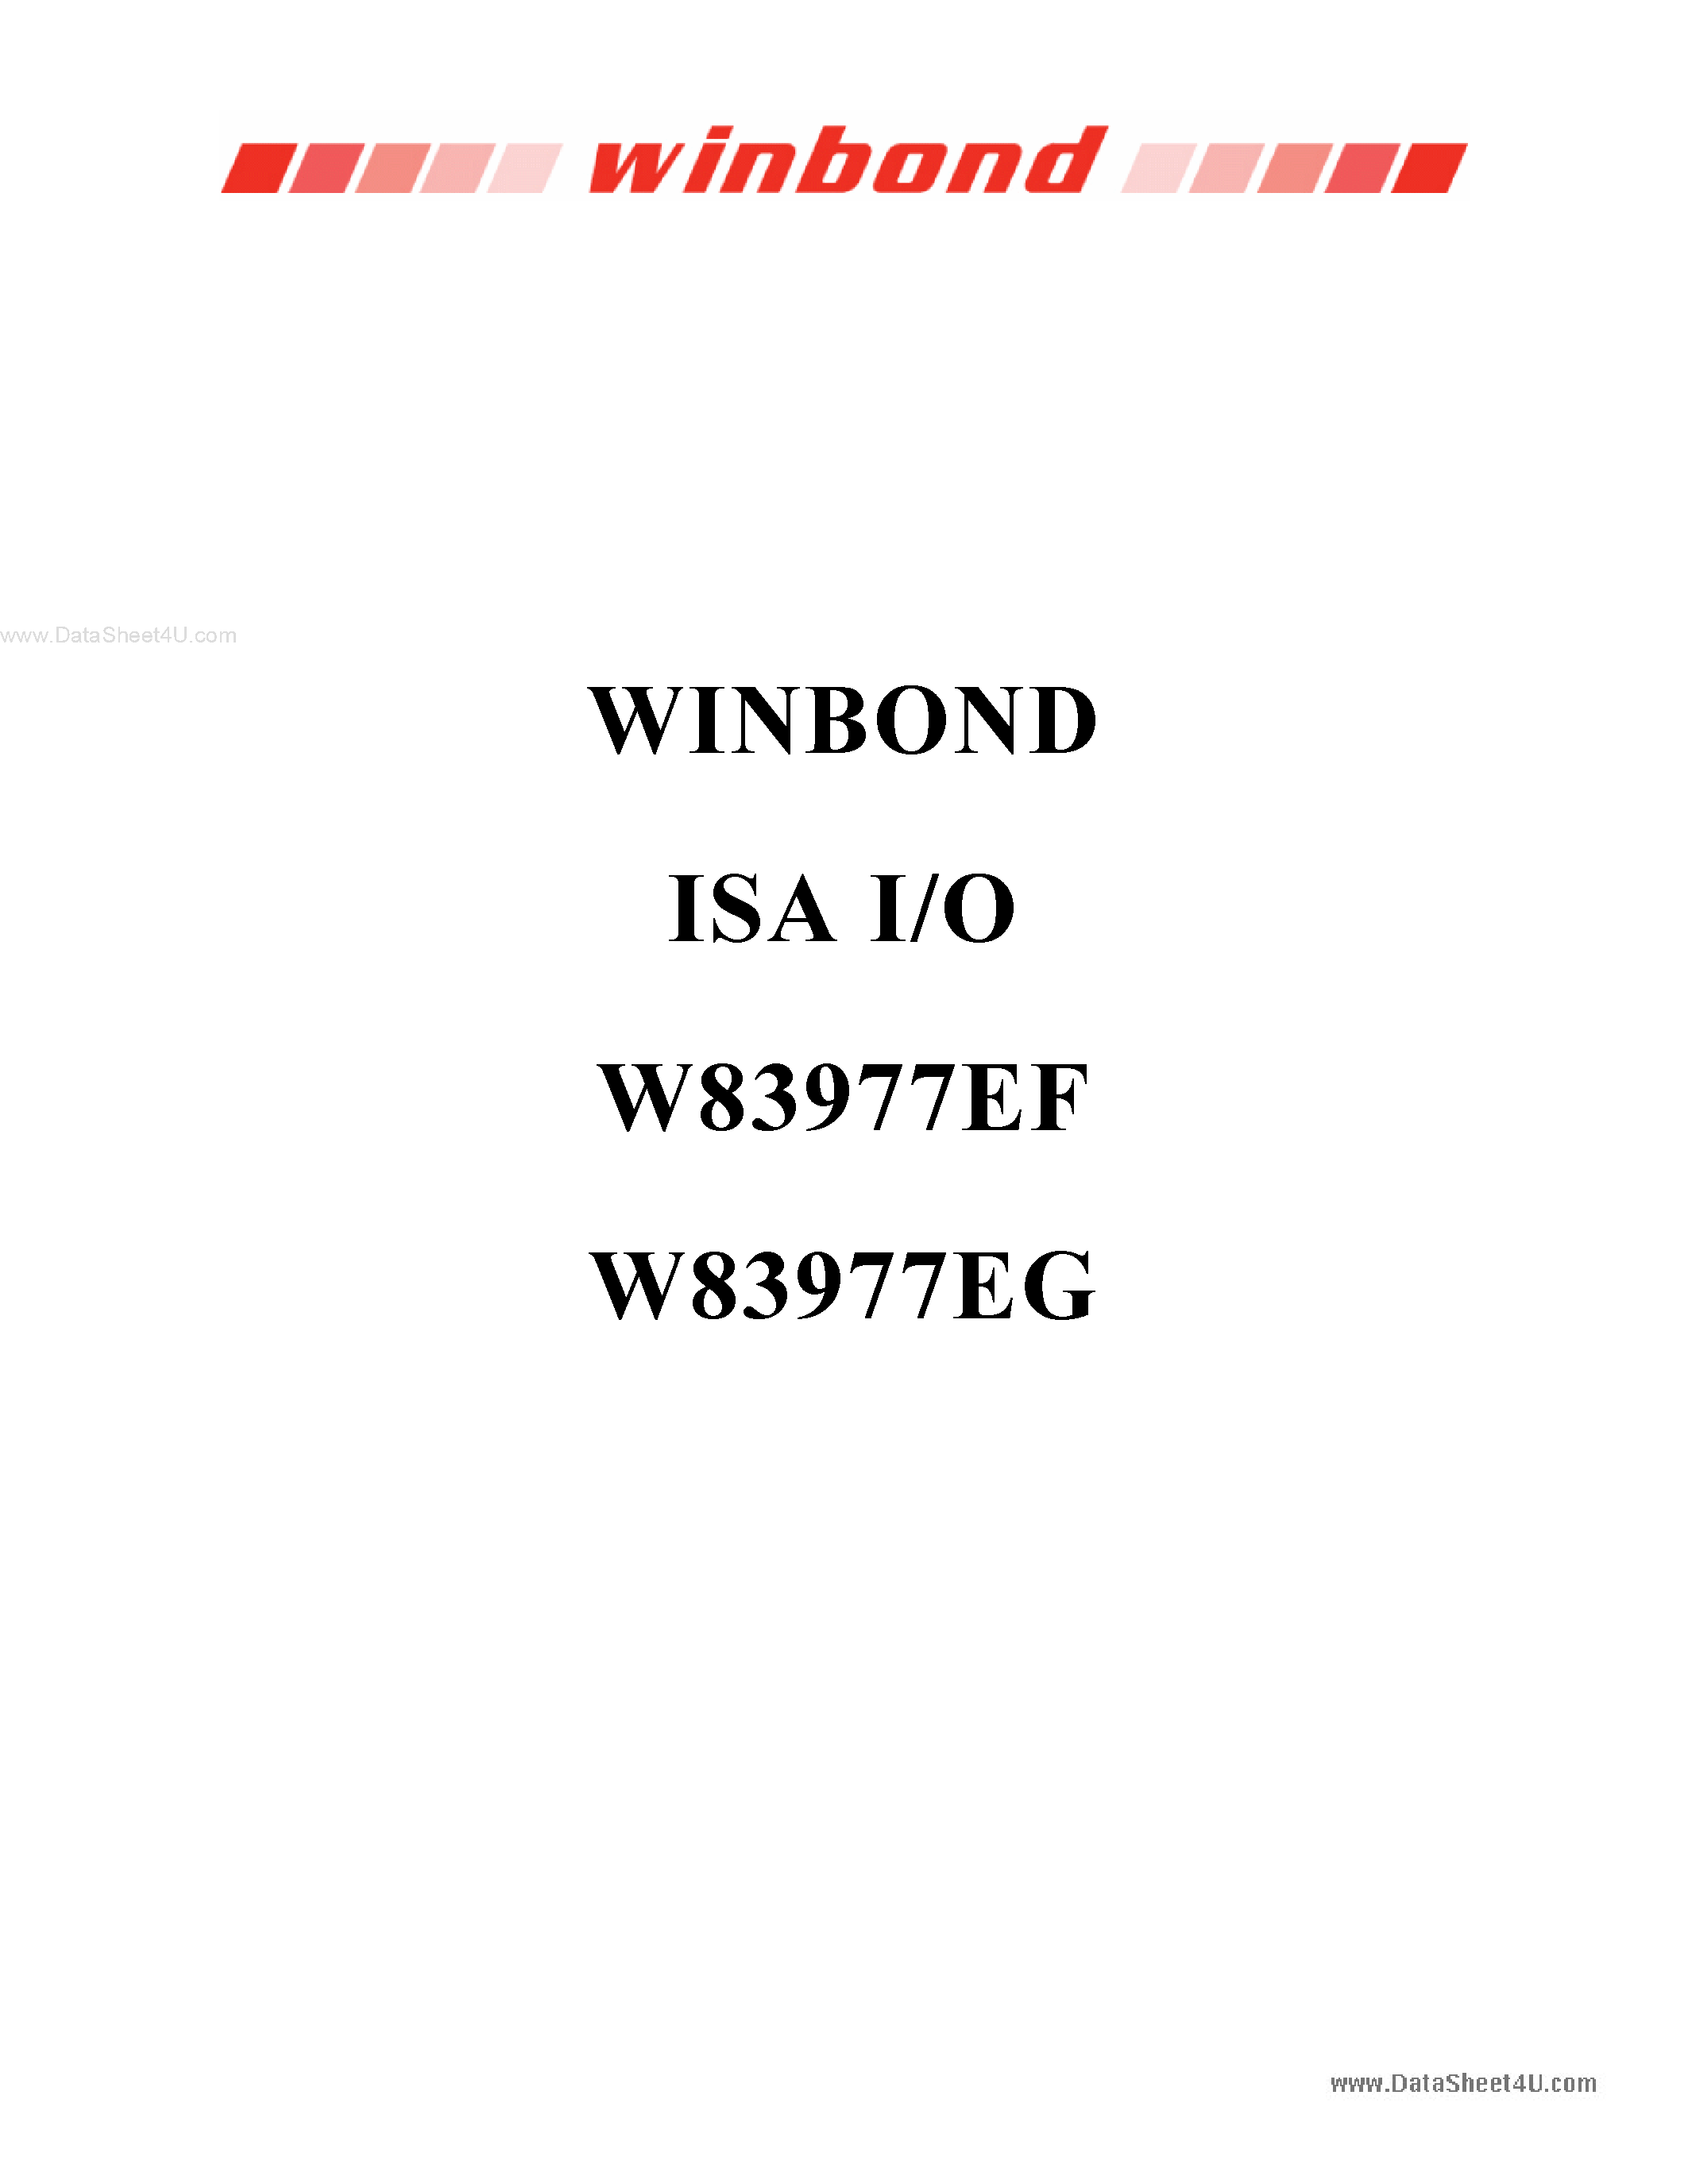 Даташит W83977EG - WINBOND ISA I/O страница 1